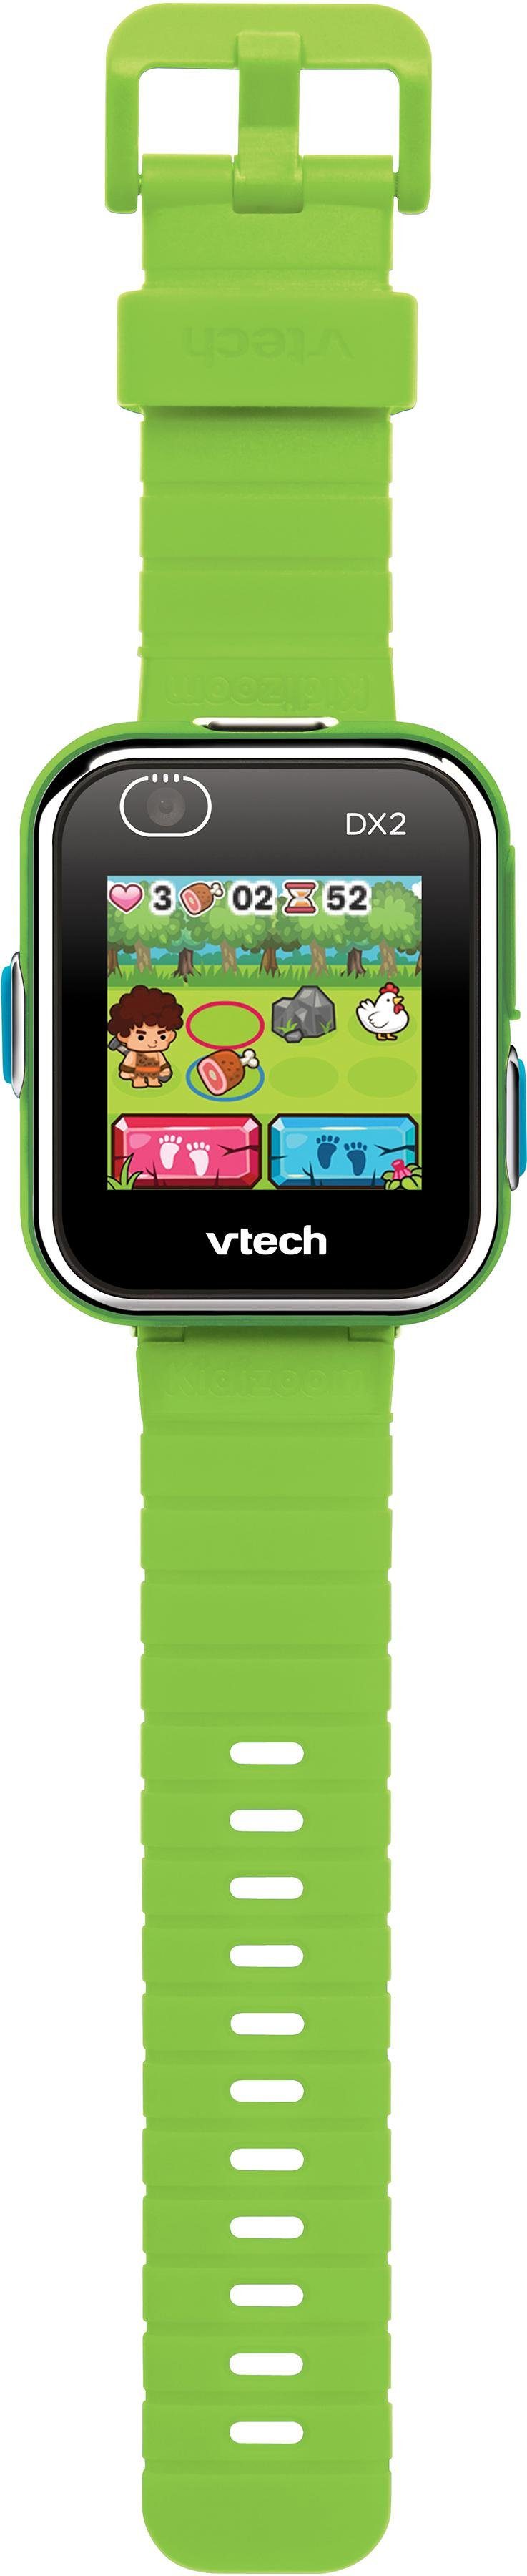 Vtech® Lernspielzeug KidiZoom Smart Watch DX2, mit Kamerafunktion grün